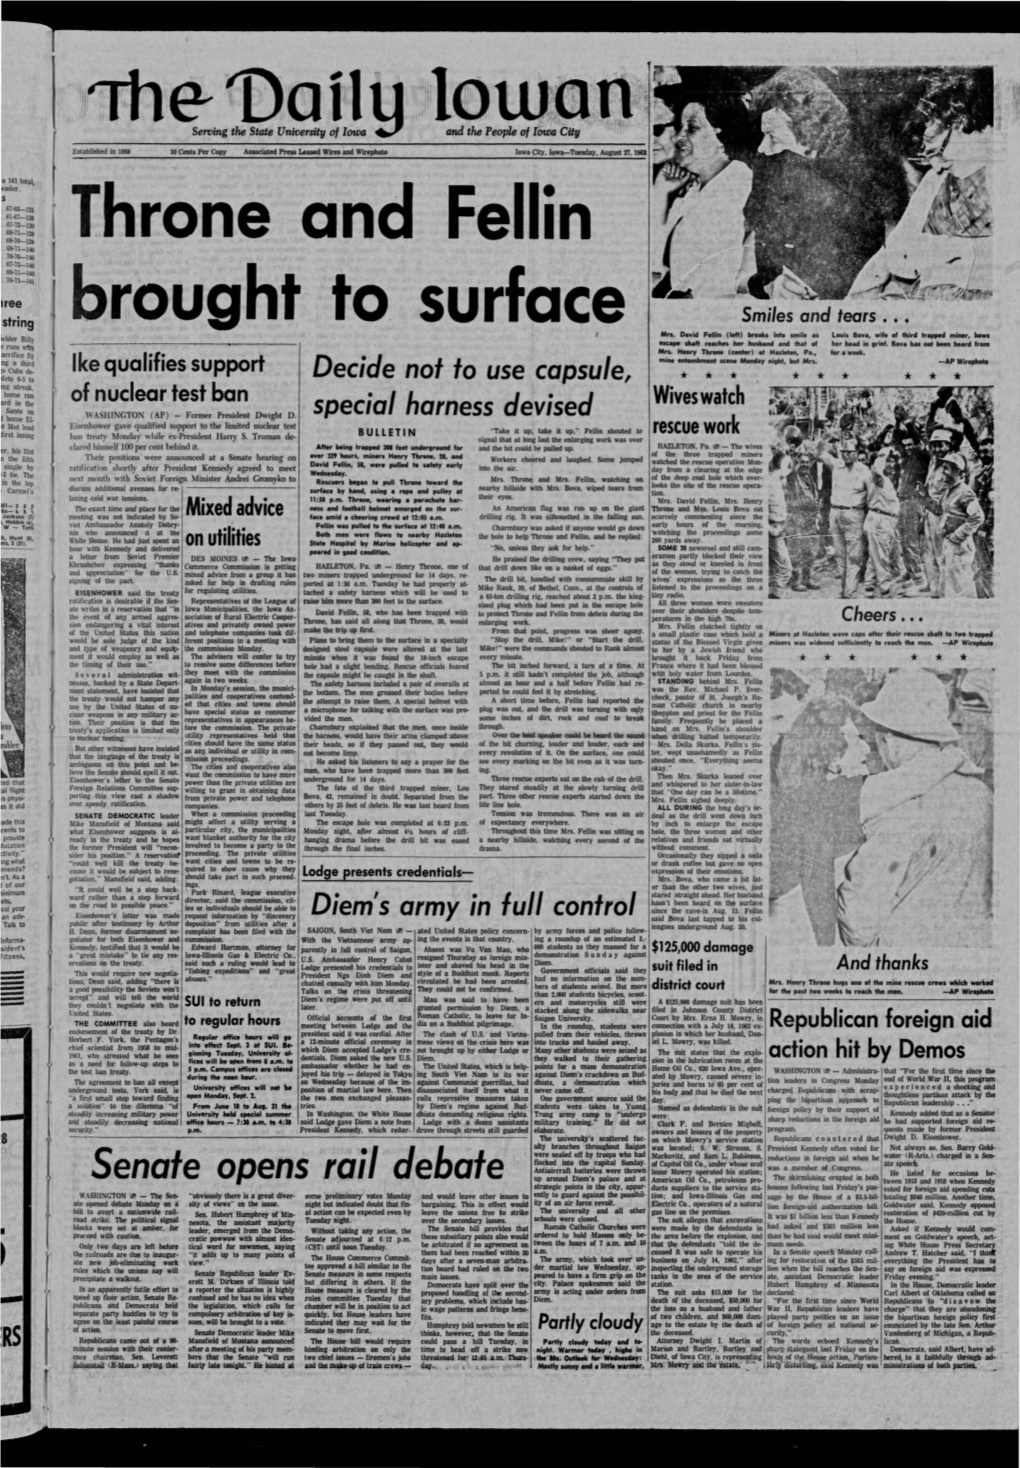 Daily Iowan (Iowa City, Iowa), 1963-08-27